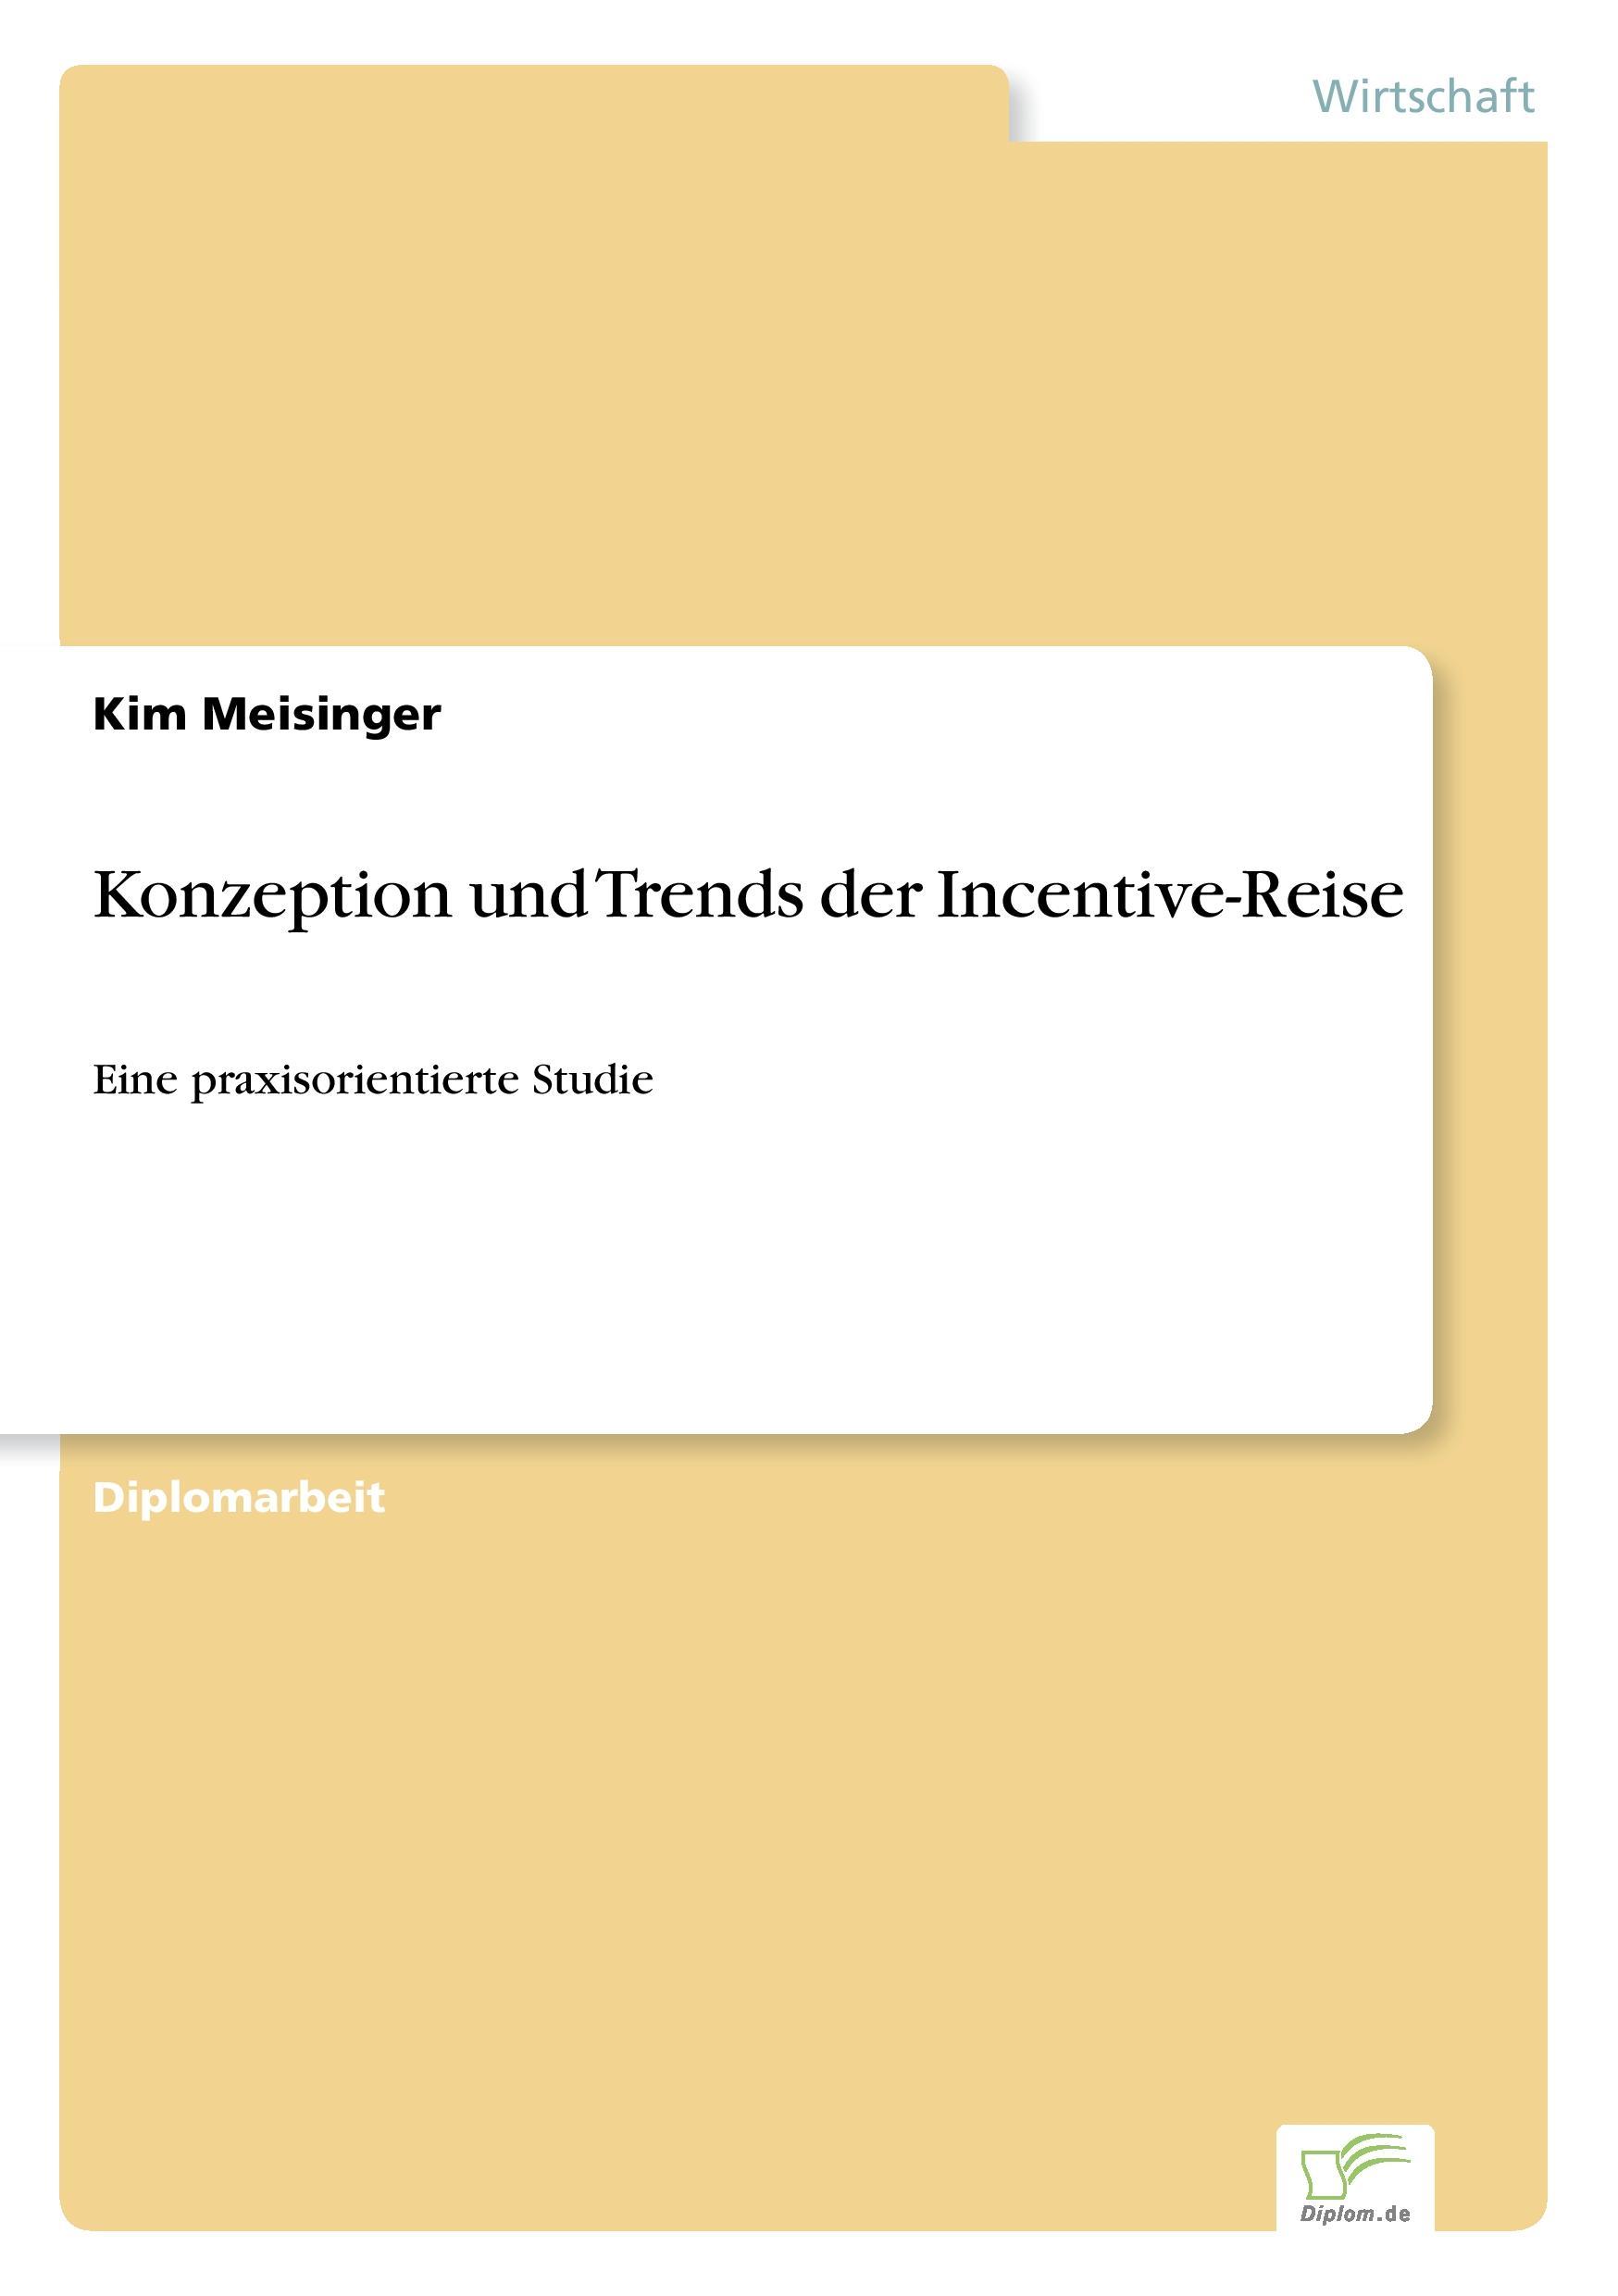 Konzeption und Trends der Incentive-Reise  Eine praxisorientierte Studie  Kim Meisinger  Taschenbuch  Paperback  Deutsch  2005 - Meisinger, Kim